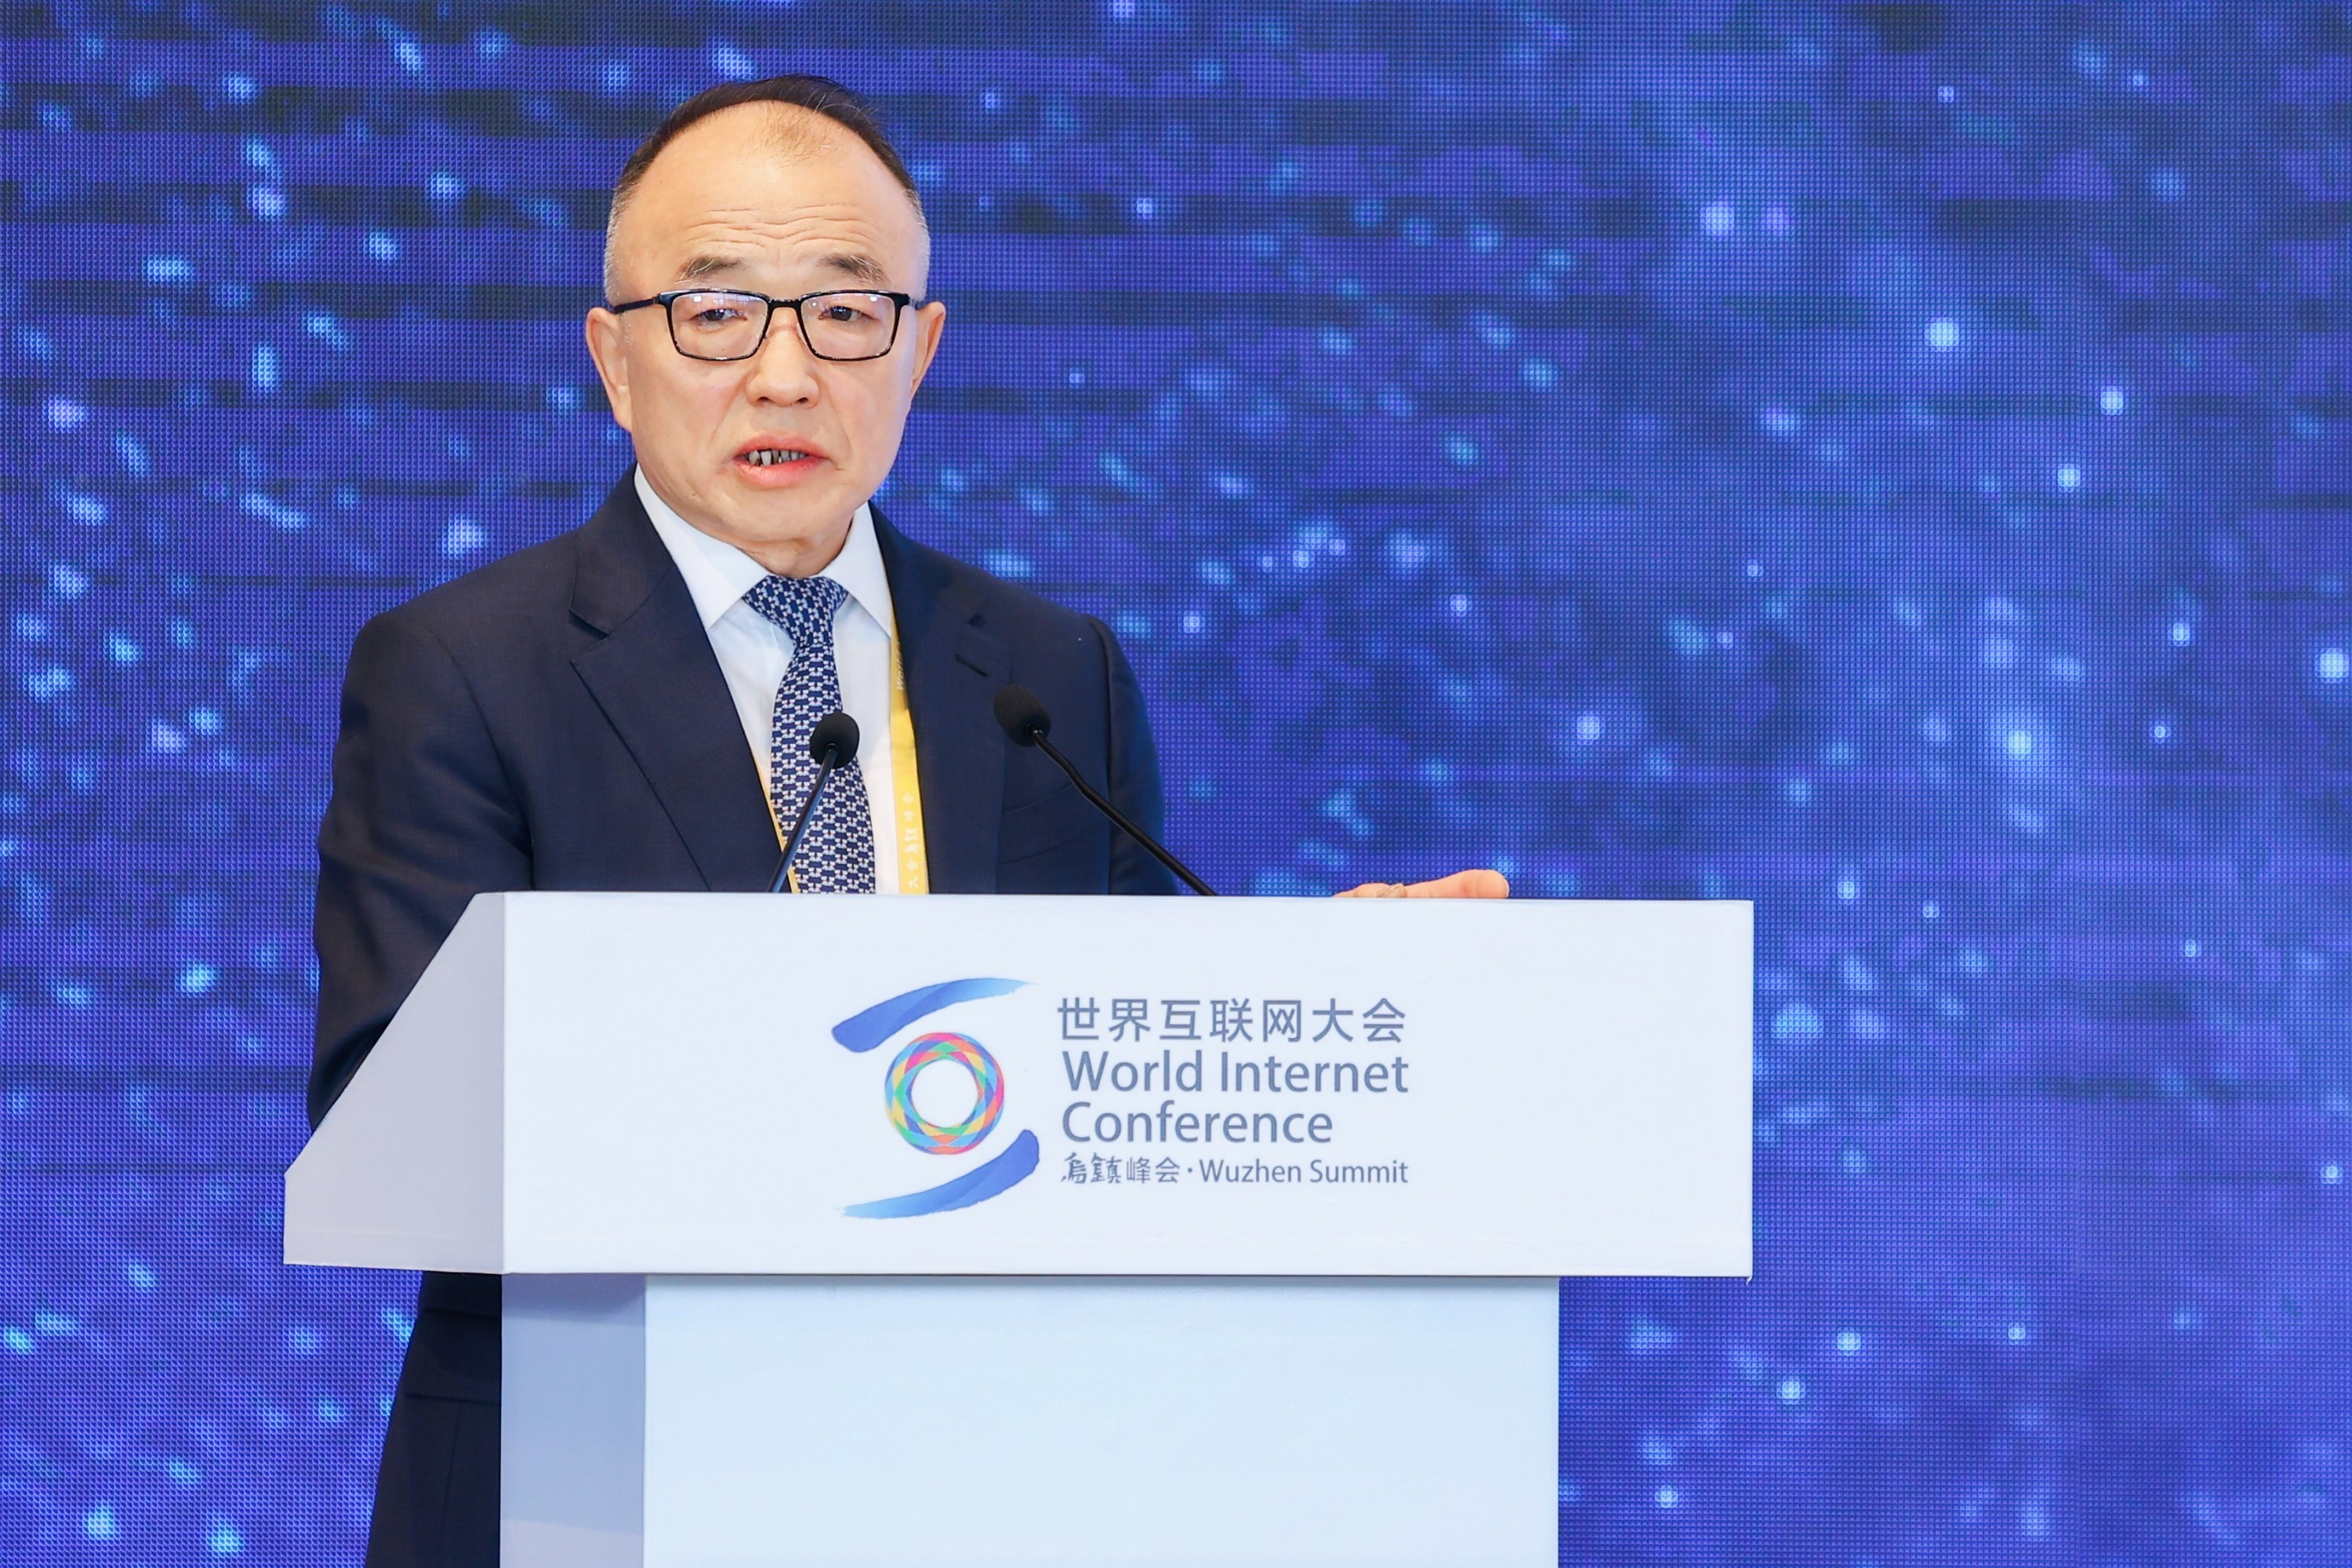 中国移动副总经理高同庆作主题演讲。